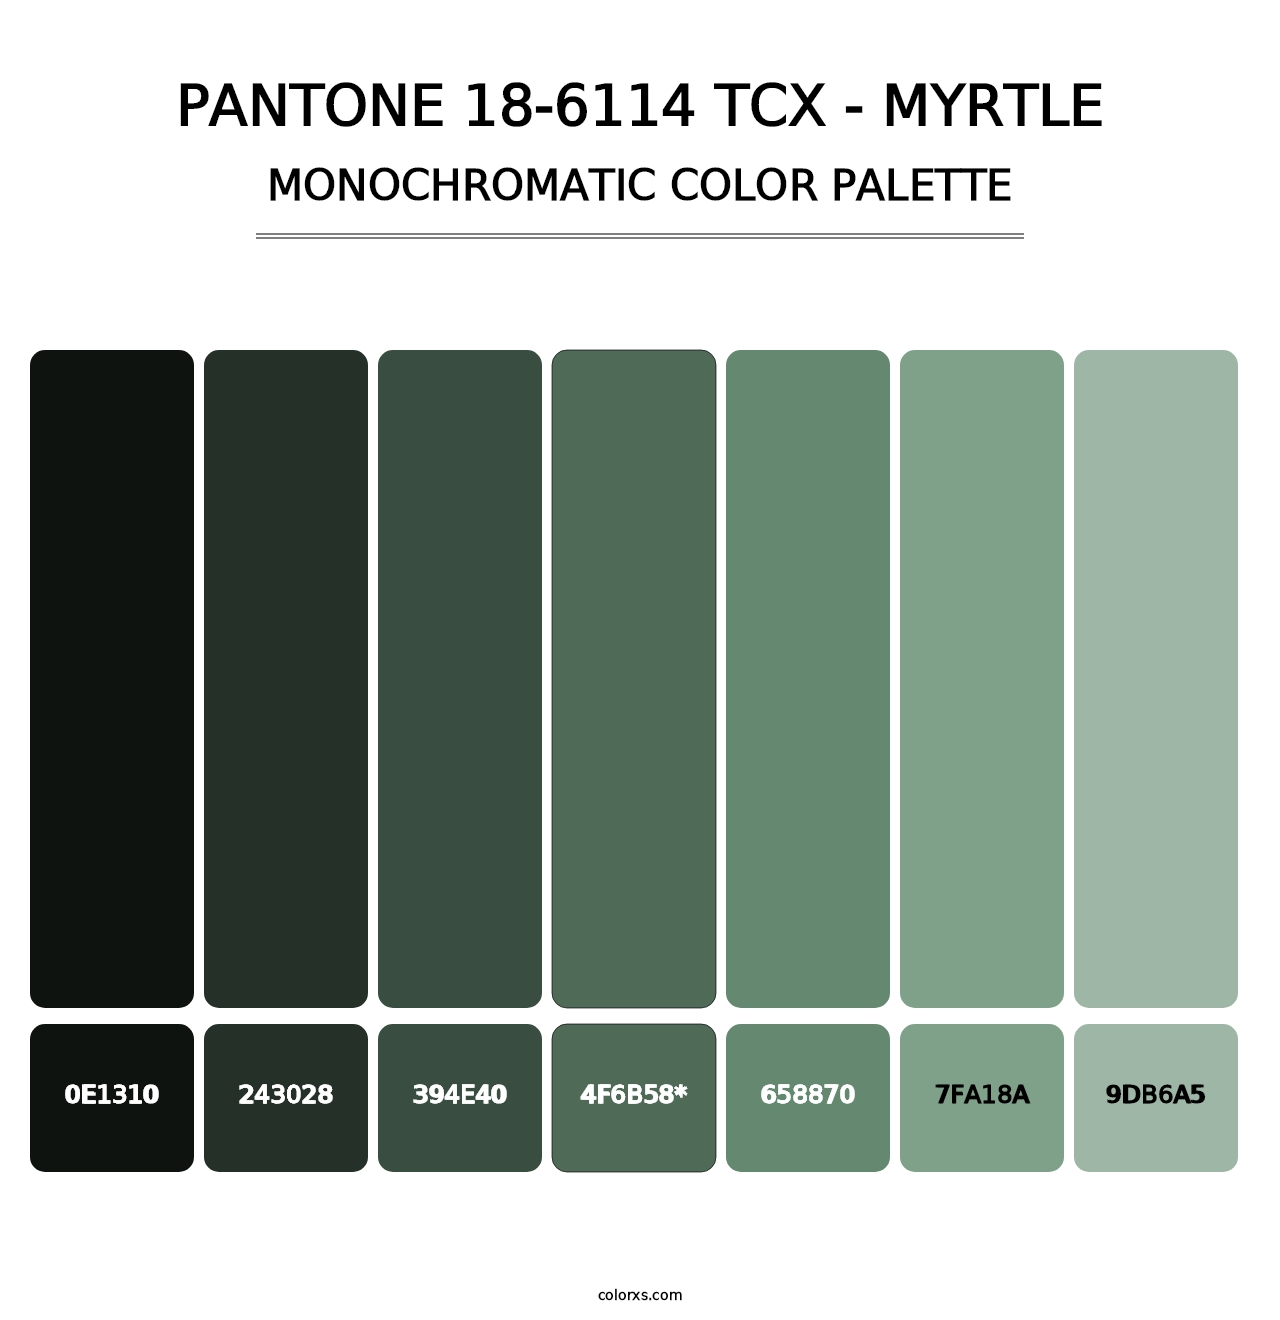 PANTONE 18-6114 TCX - Myrtle - Monochromatic Color Palette